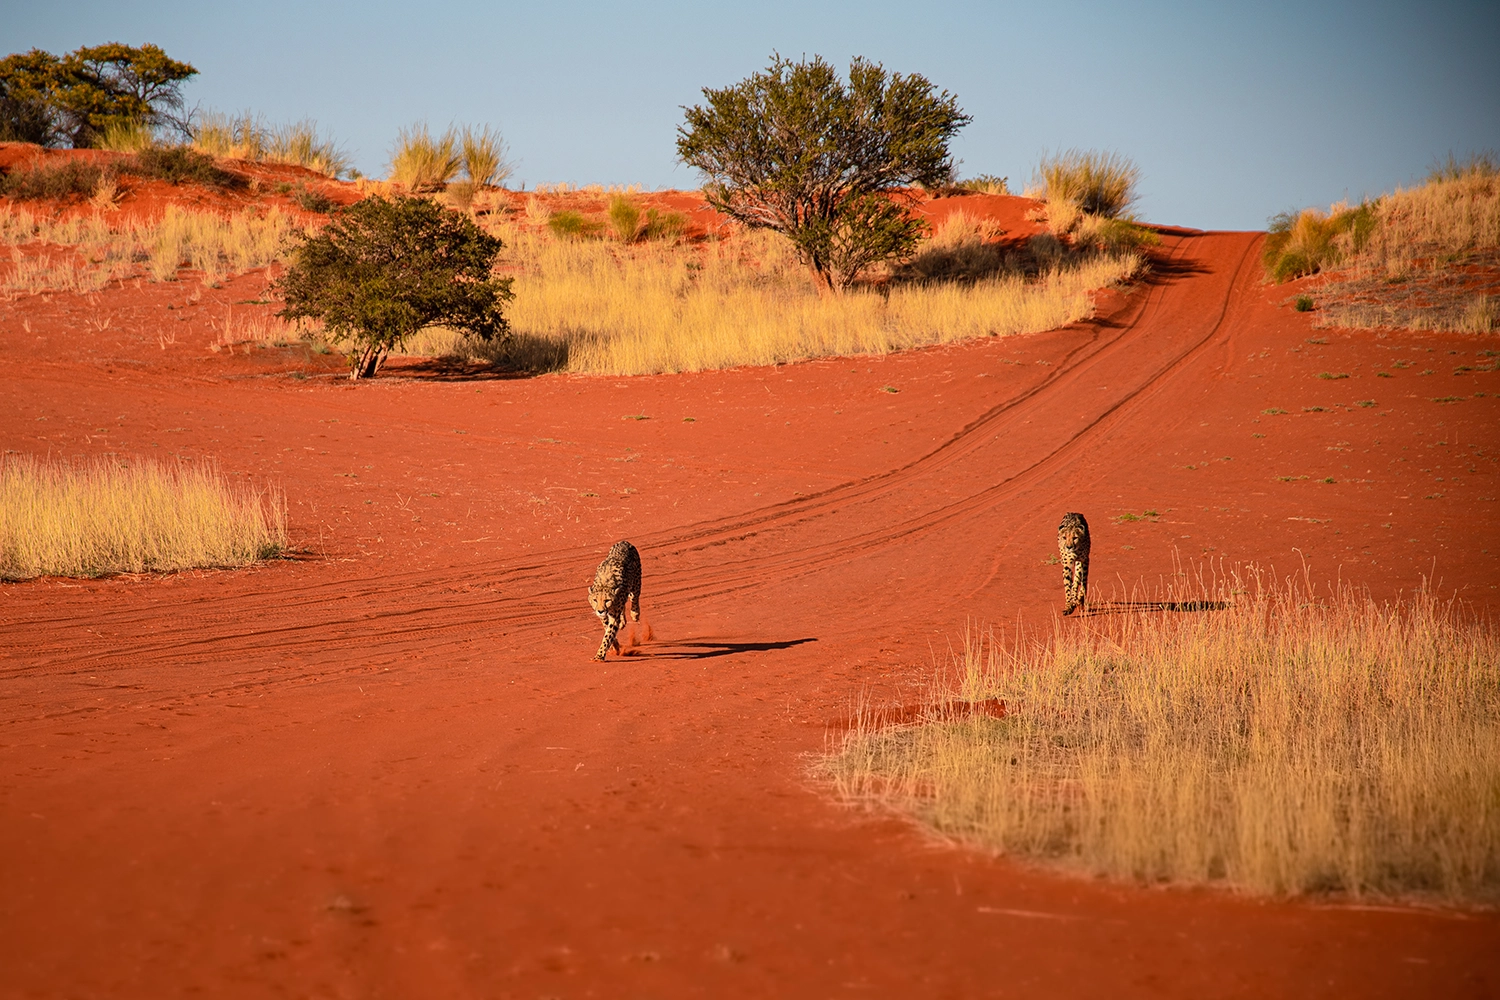 Nambia Sehenswürdigkeiten in der Kalahari Wüste 
© Marielle Janotta - My Travel Island